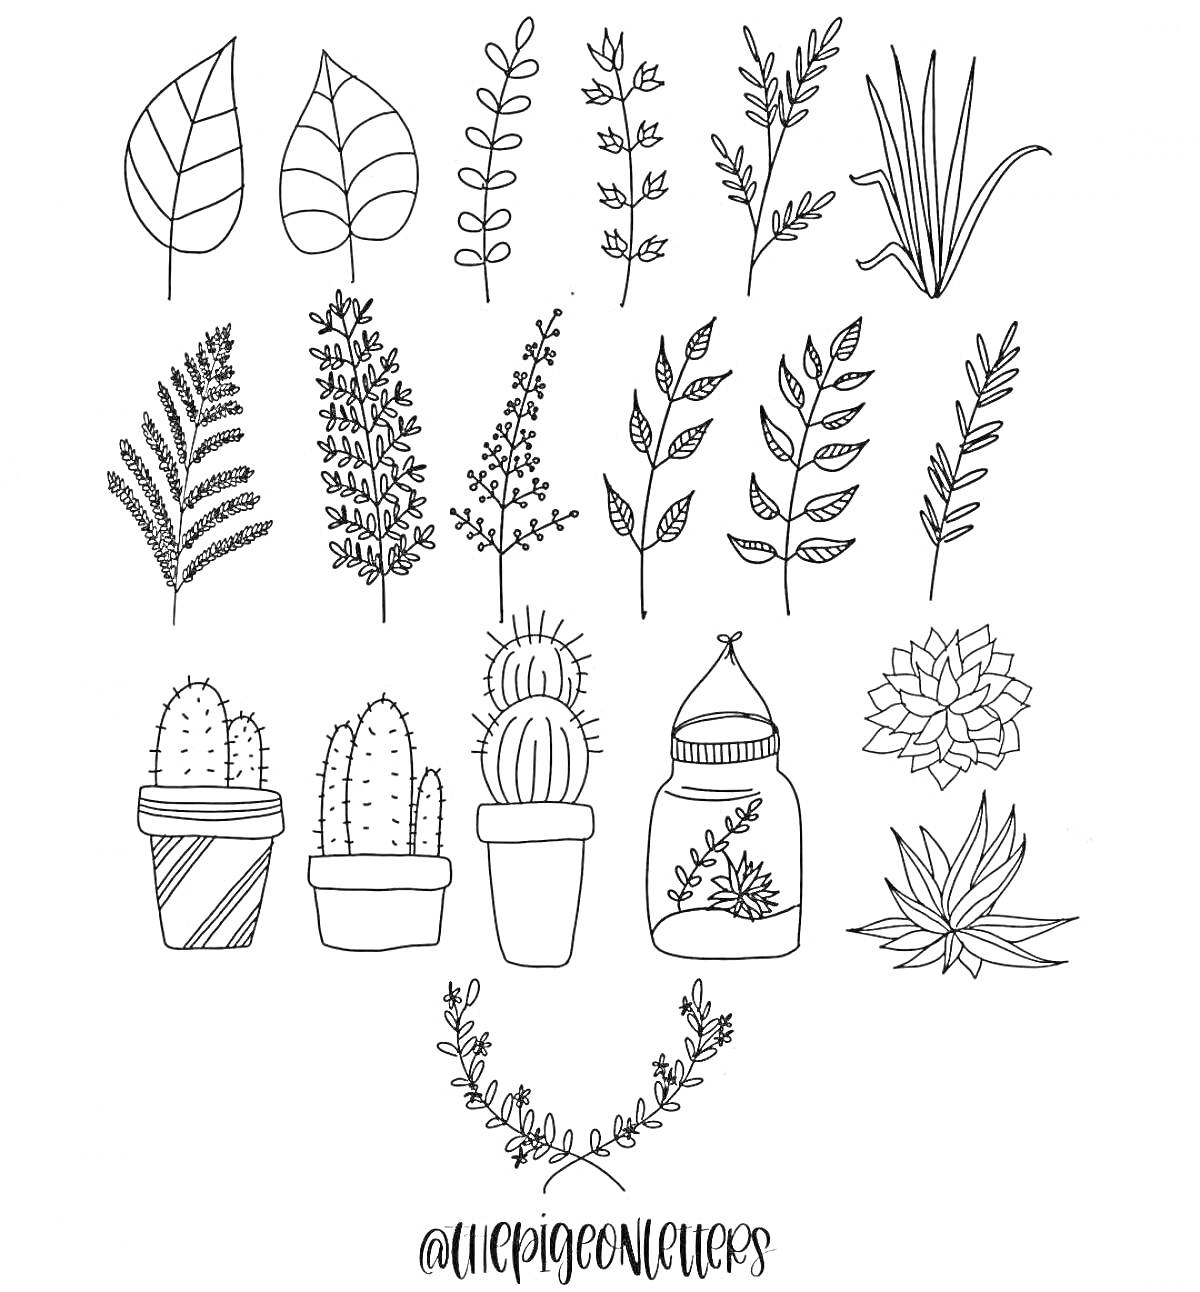 Растения и кактусы: листья, веточки, кактусы в горшках, суккуленты, венок